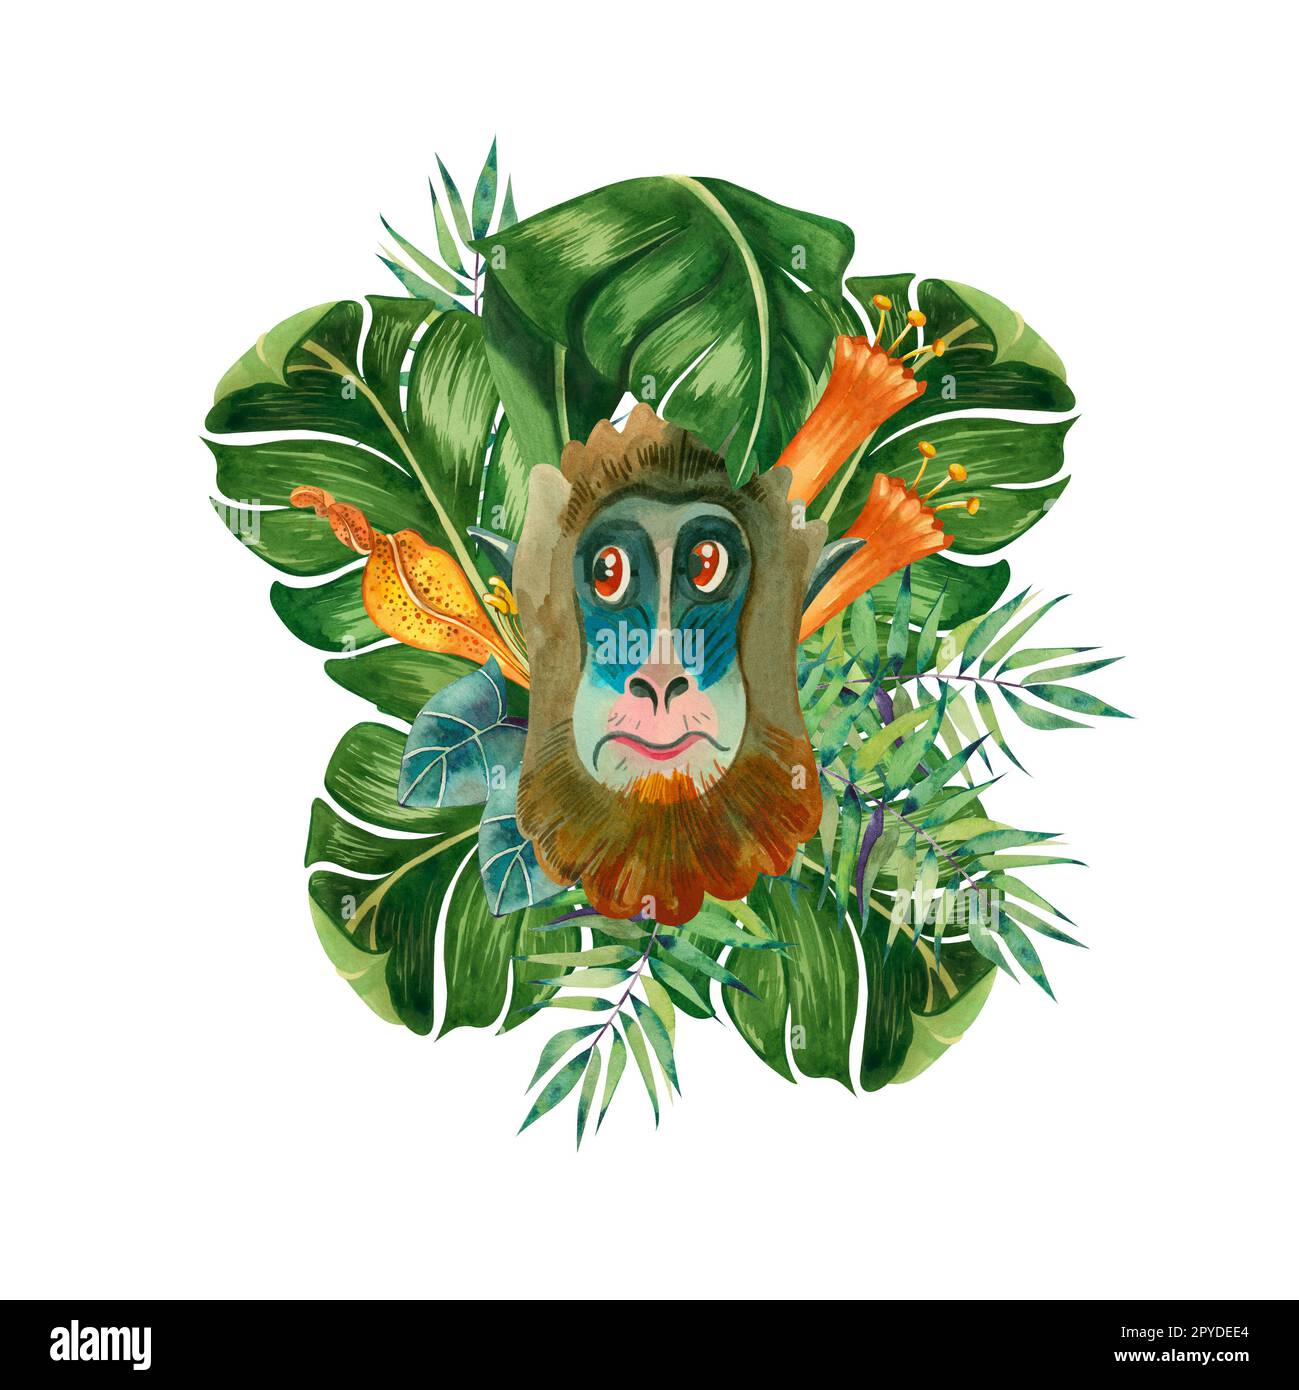 Jungle. Composition aquarelle avec des feuilles et des fleurs de singe et tropicales sur fond blanc. Tous les éléments sont dessinés à la main en aquarelle sur un blanc Banque D'Images